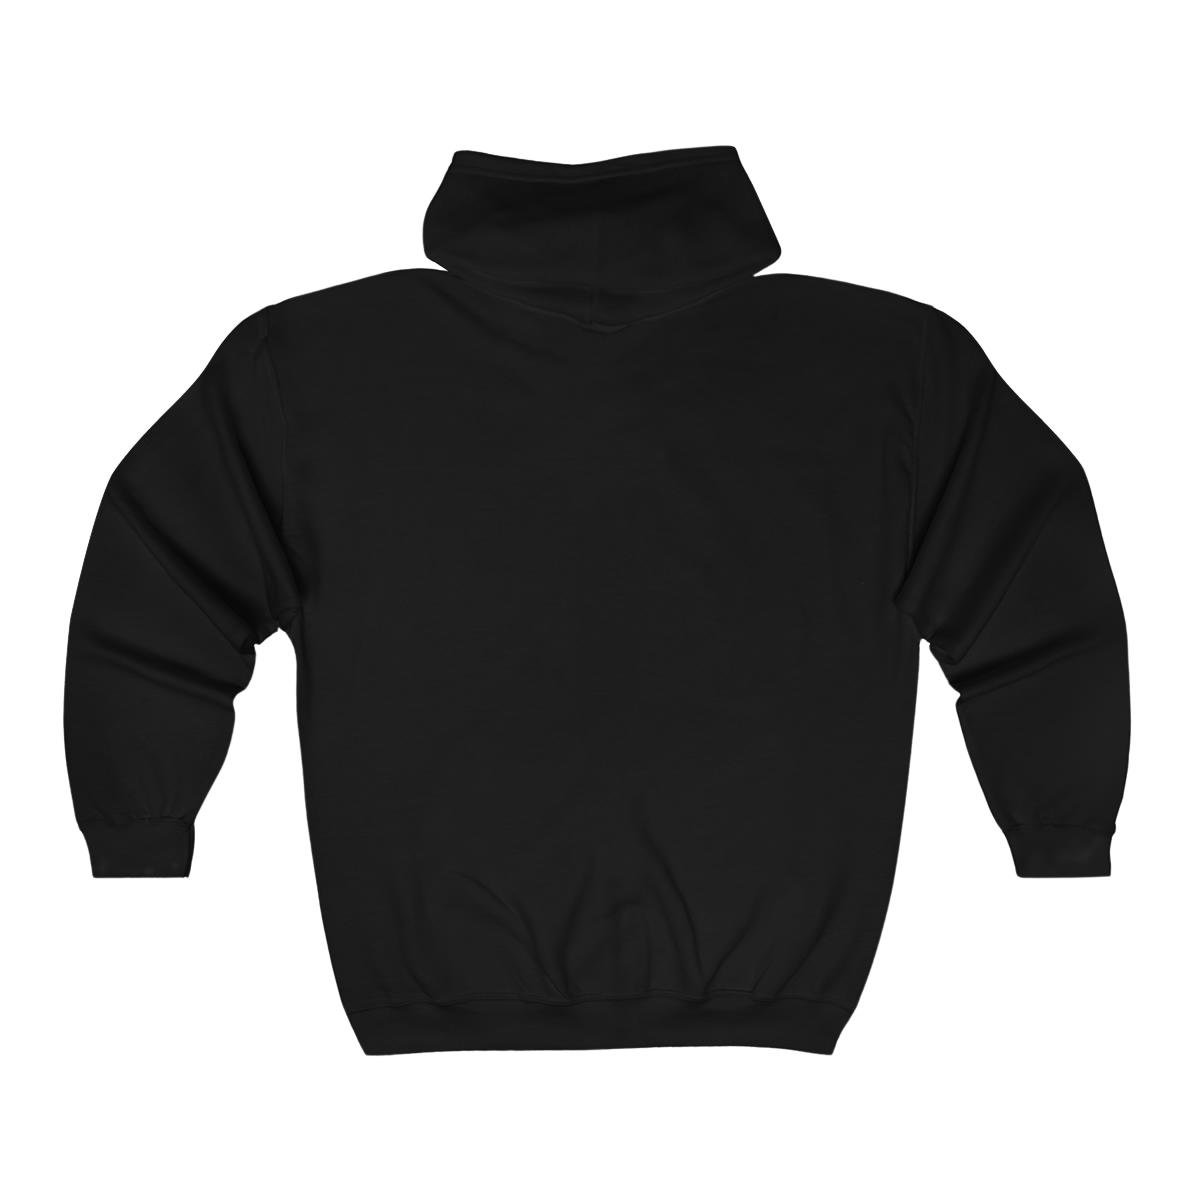 Mawcore Griffin Crest Full Zip Hooded Sweatshirt